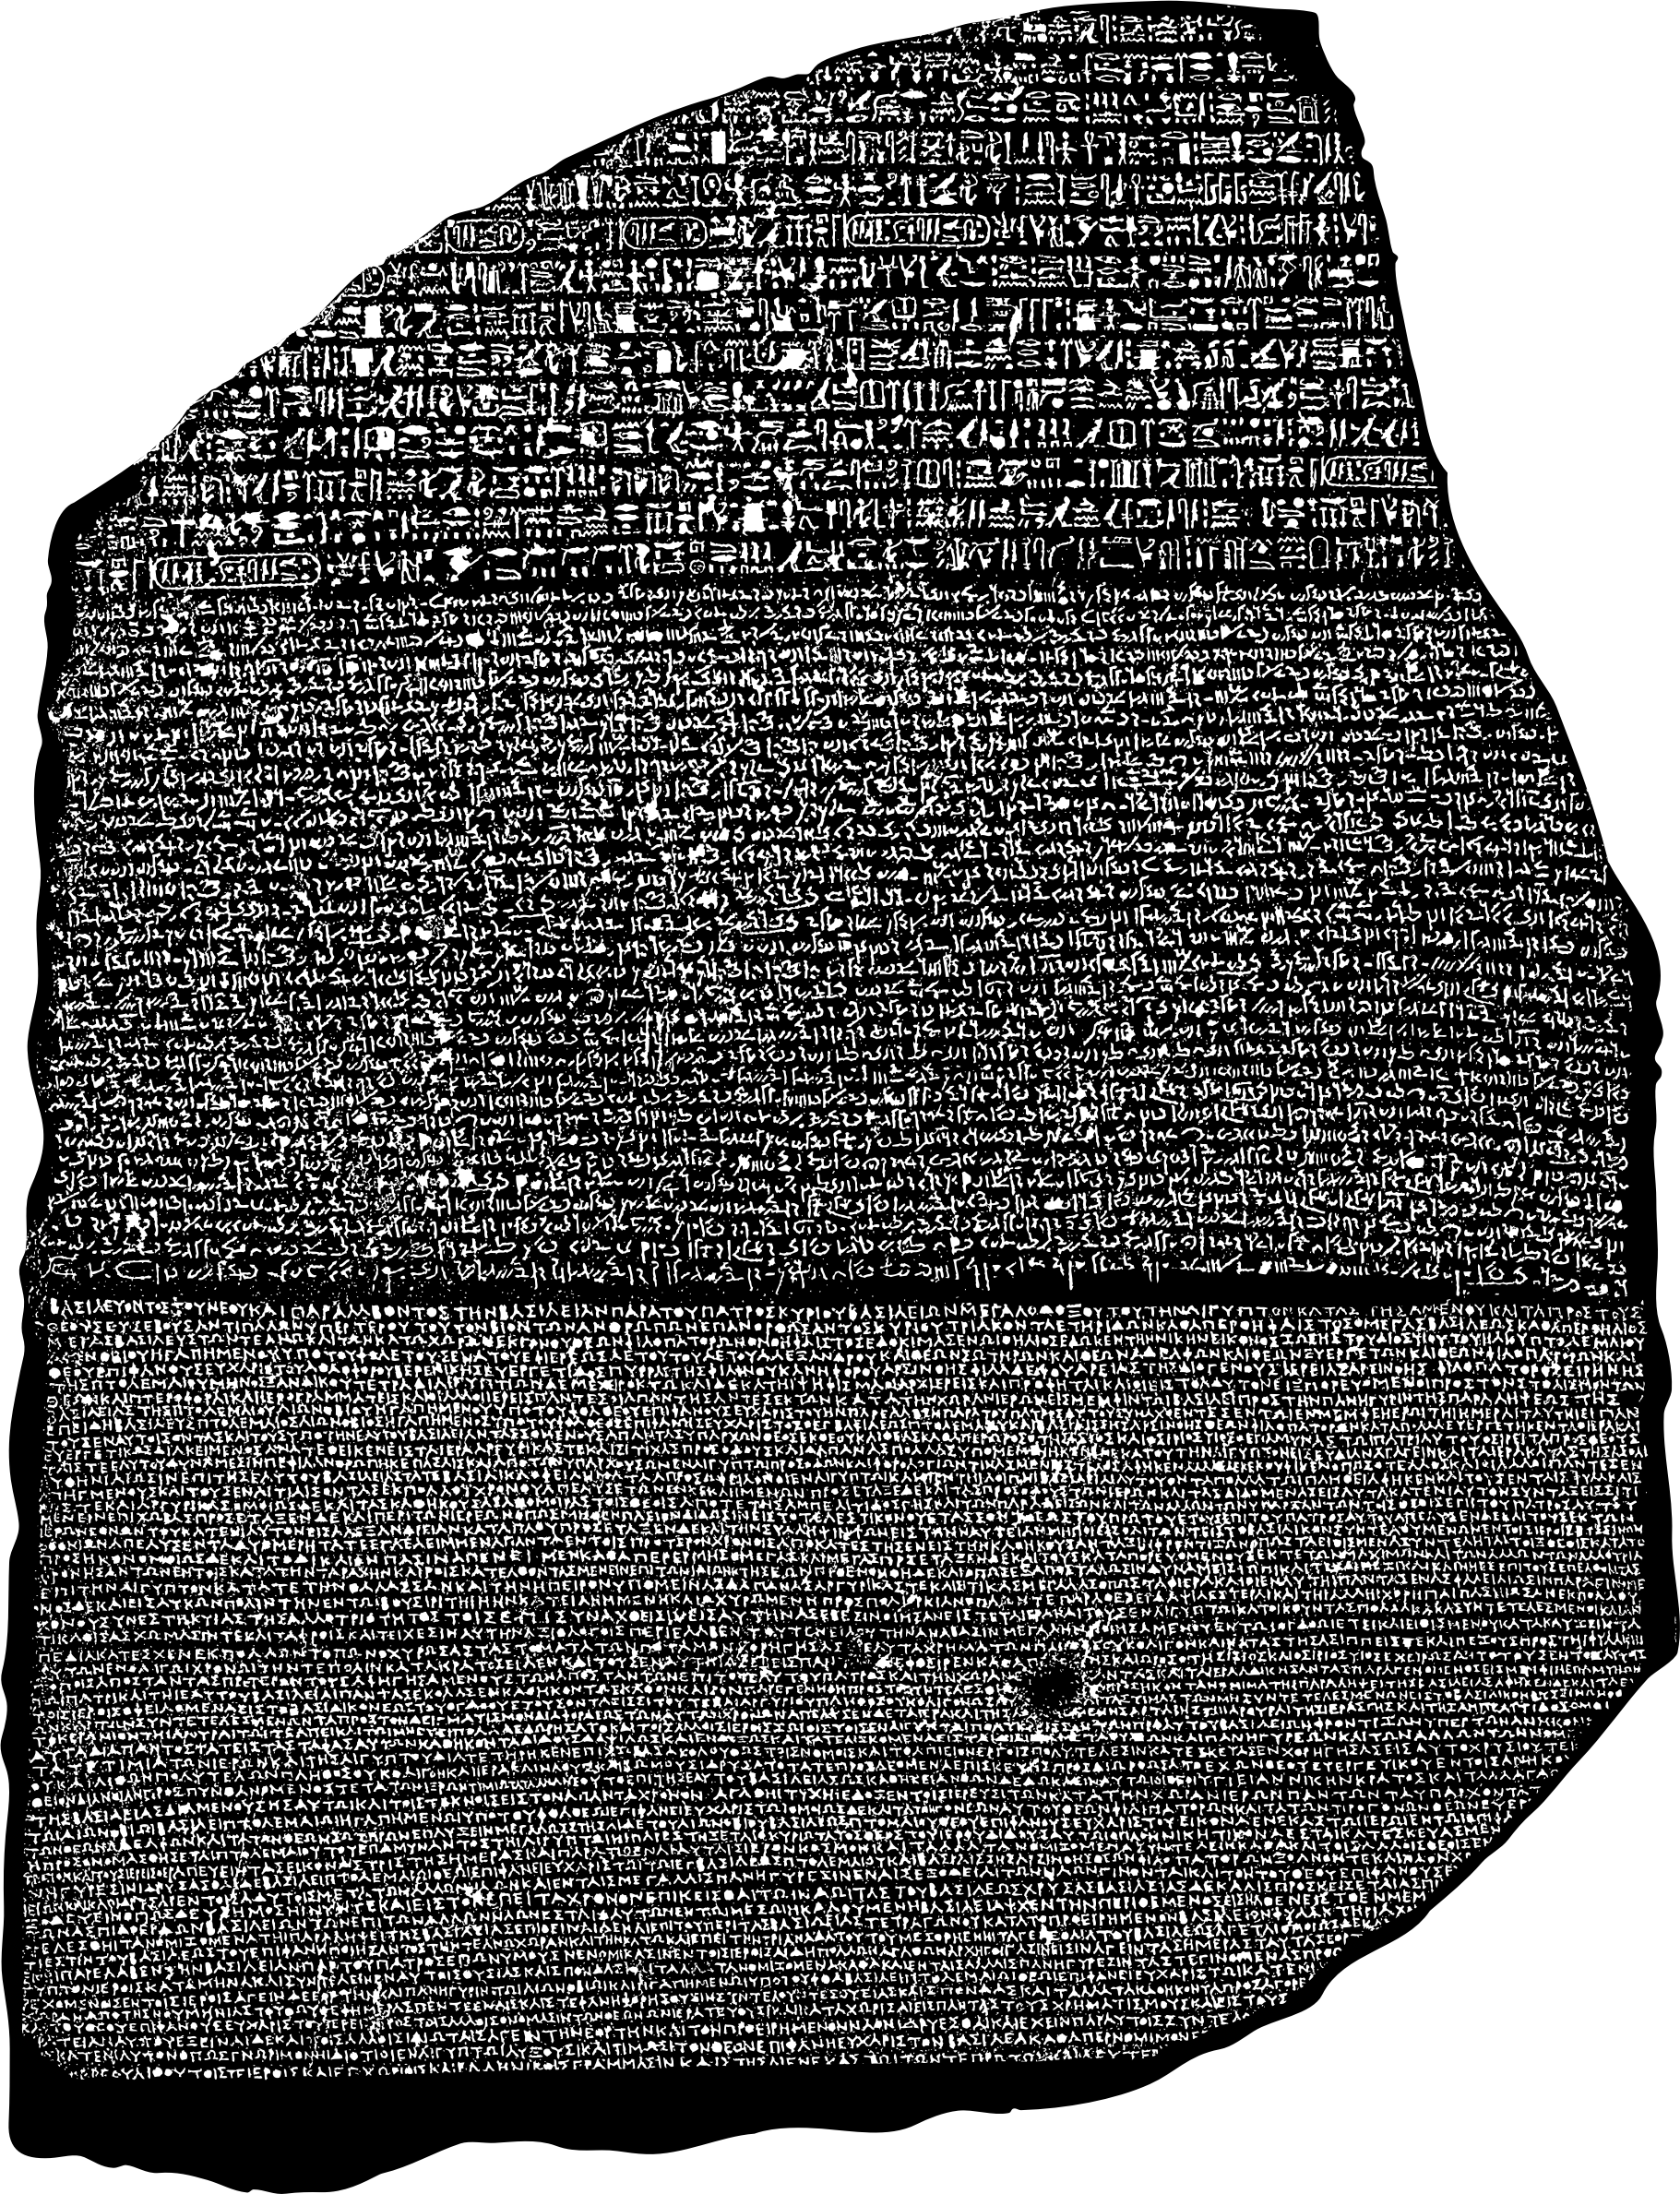 The Rosetta Stone Clip arts